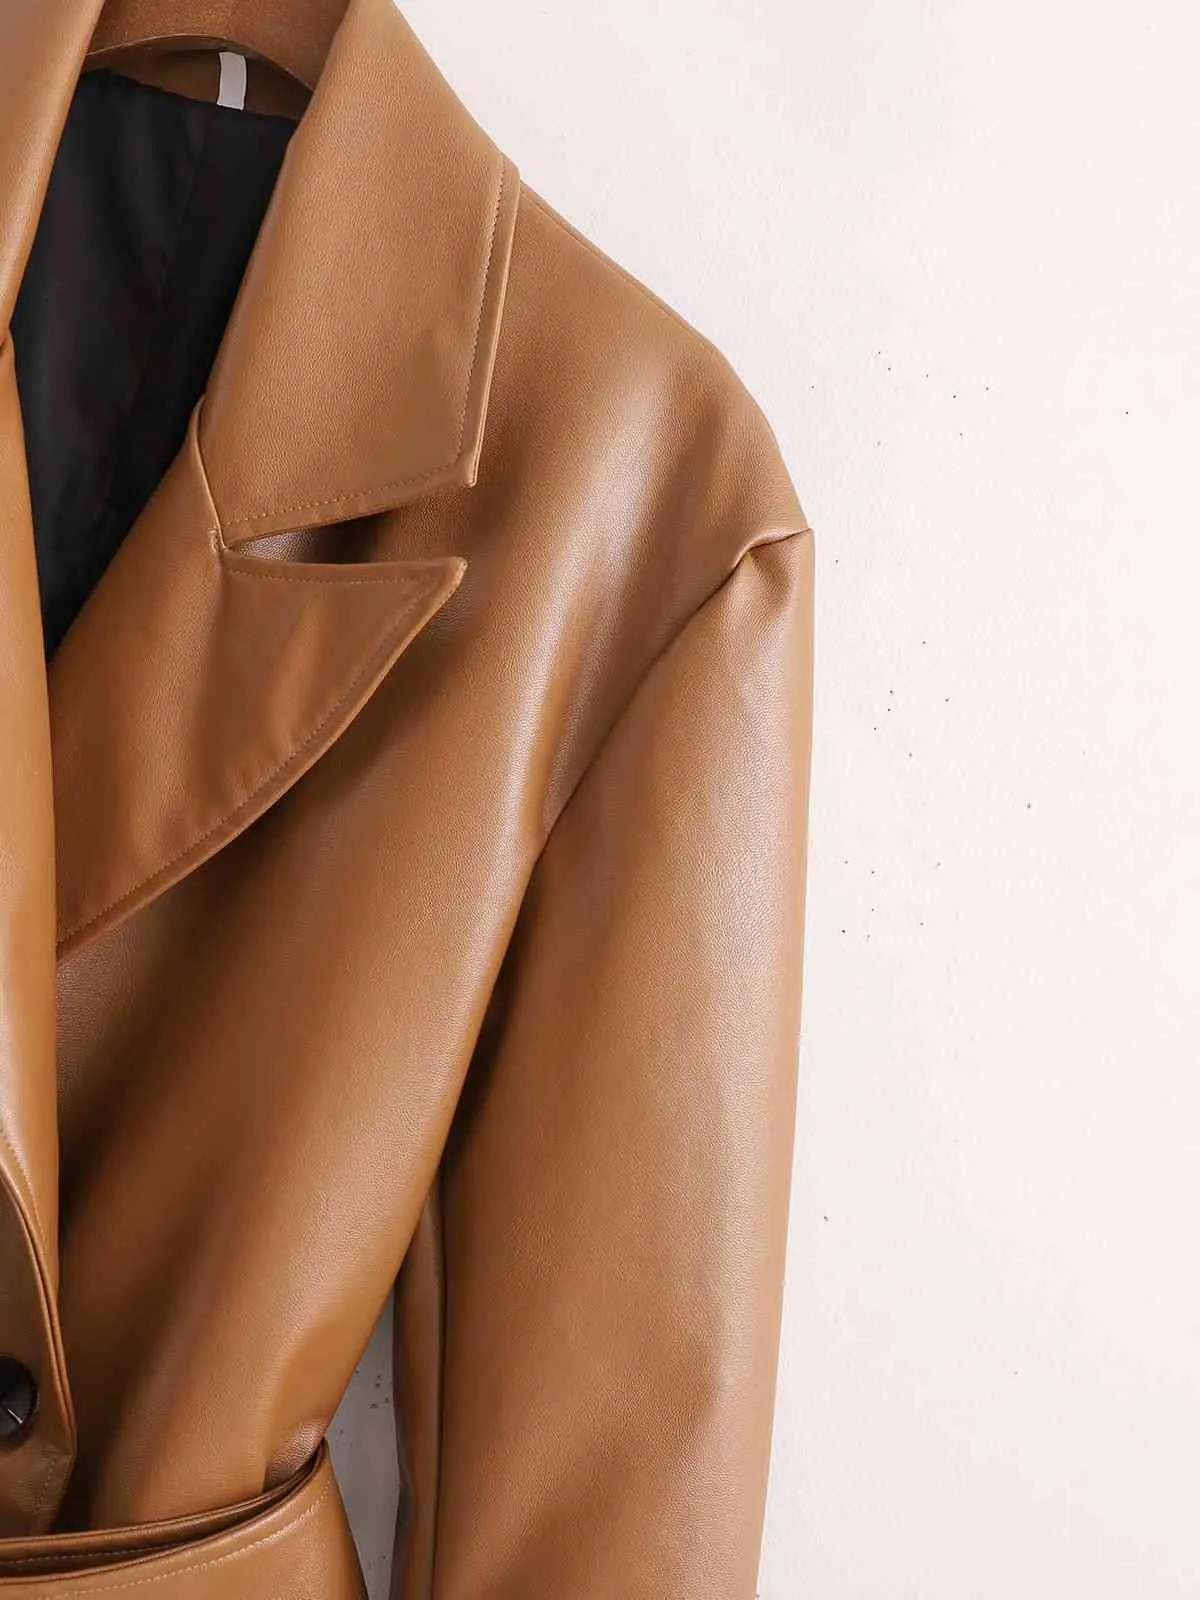 Trench-coat en faux cuir d'hiver femme Pu coupe-vent double boutonnage vêtements d'extérieur couleur unie 210421